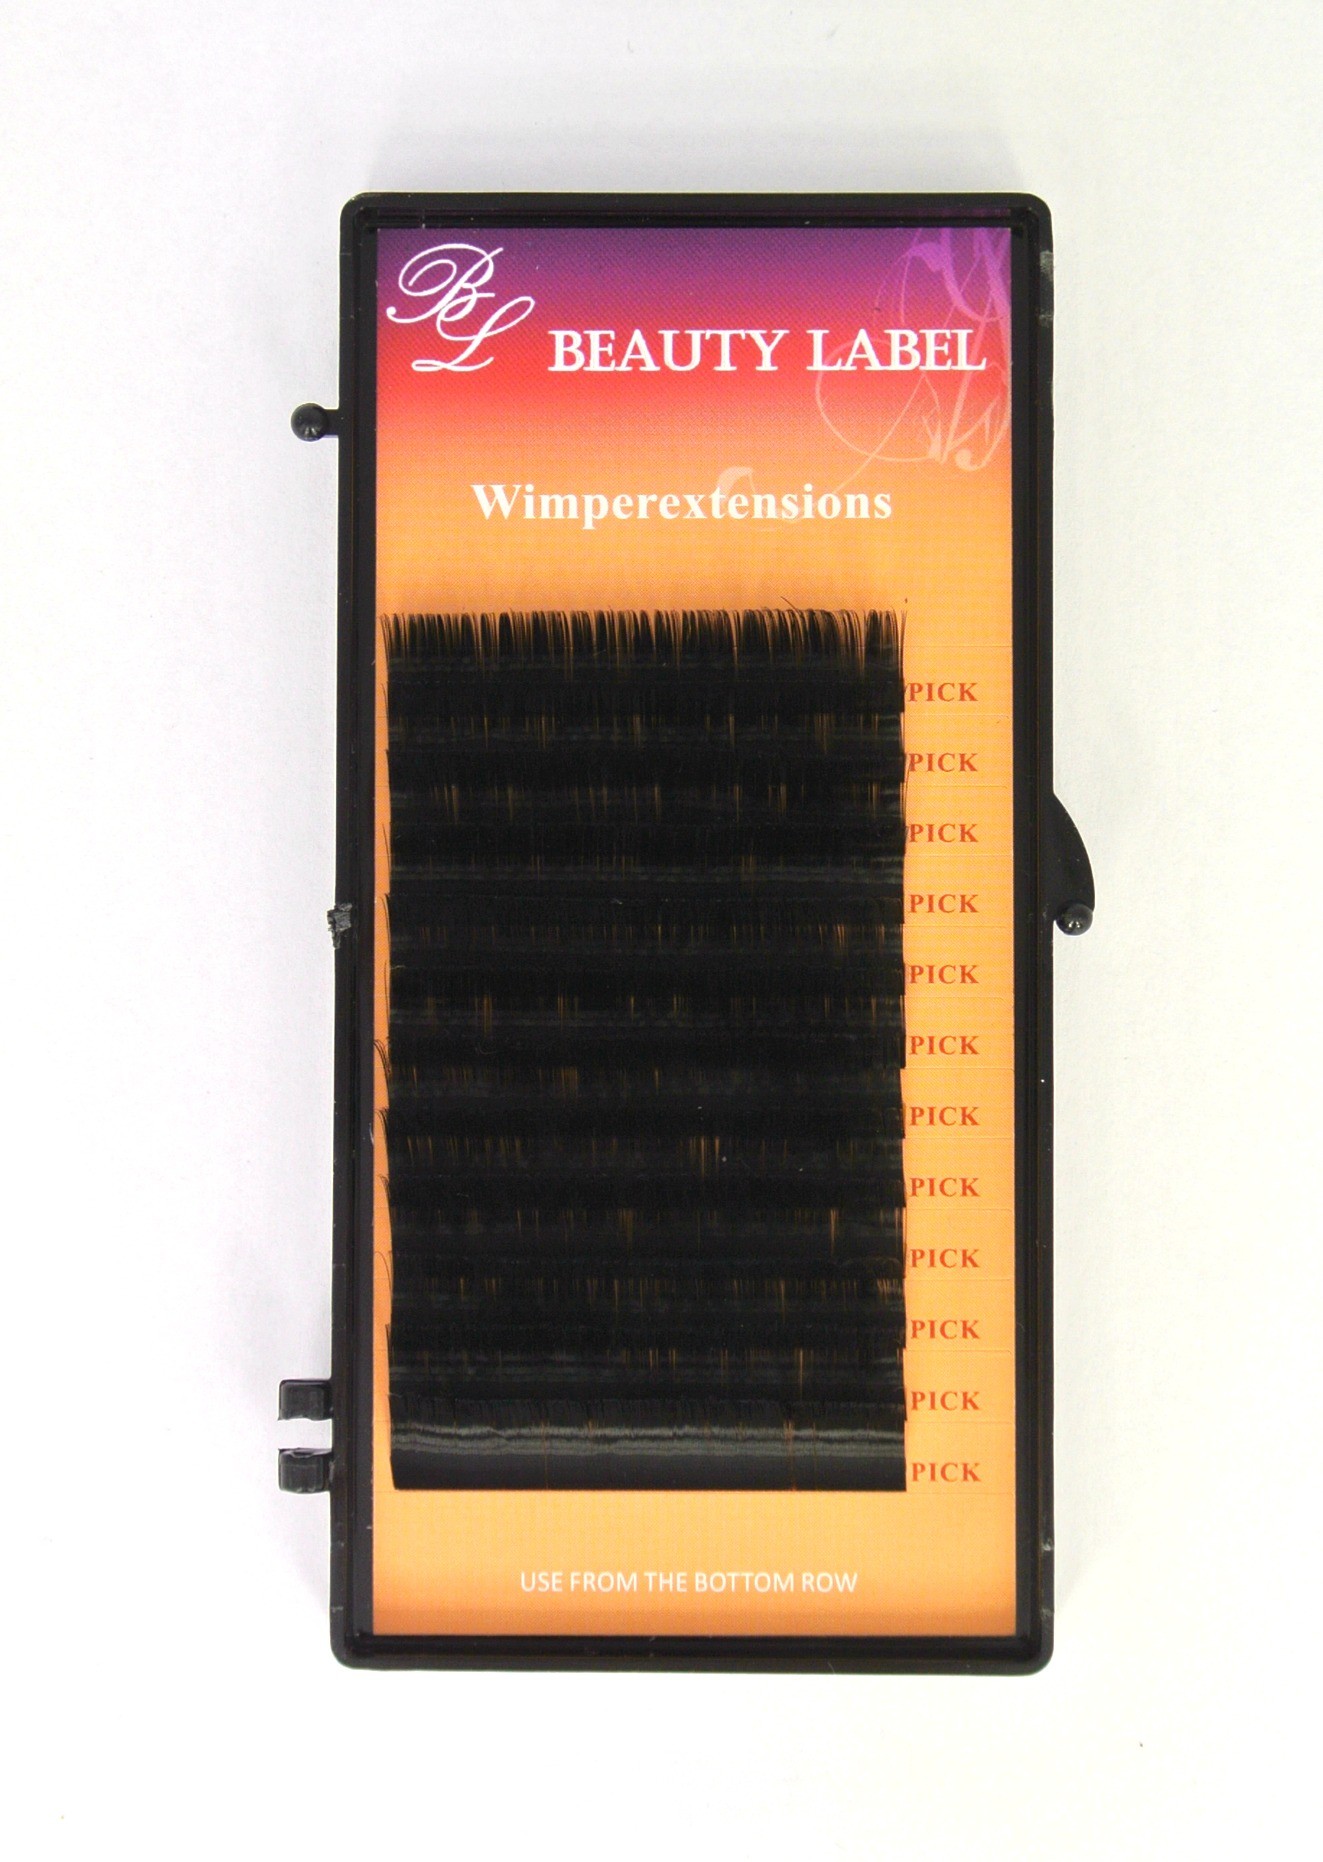 Beauty Label D krul mix silk coating super zachte volume wimpers voor de proffesionele wimperstyliste te gebruiken.